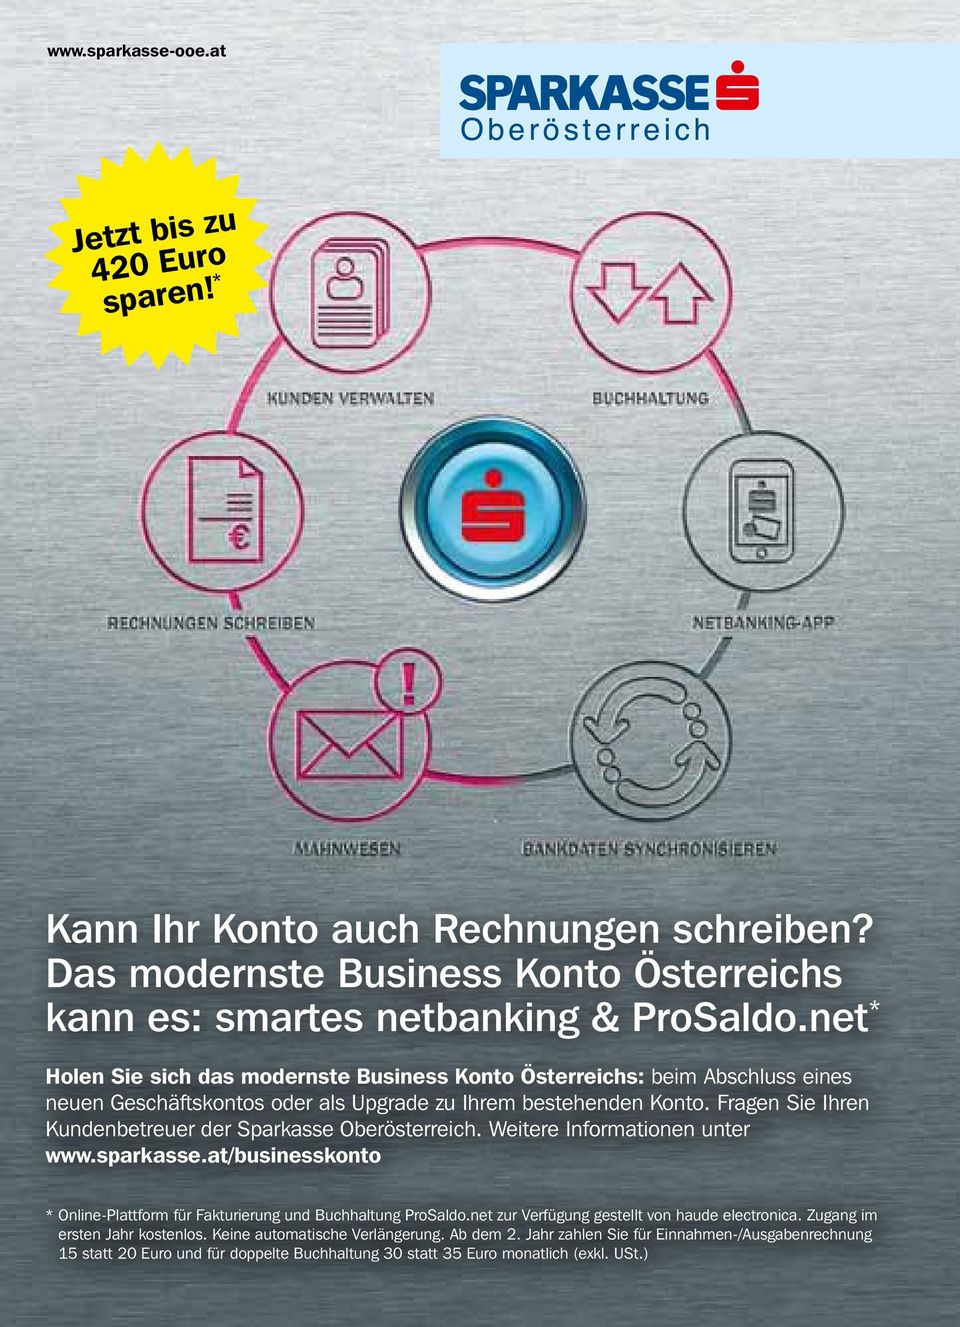 Fragen Sie Ihren Kunden betreuer der Sparkasse Oberösterreich. Weitere Informationen unter www.sparkasse.at/businesskonto * Online-Plattform für Fakturierung und Buchhaltung ProSaldo.